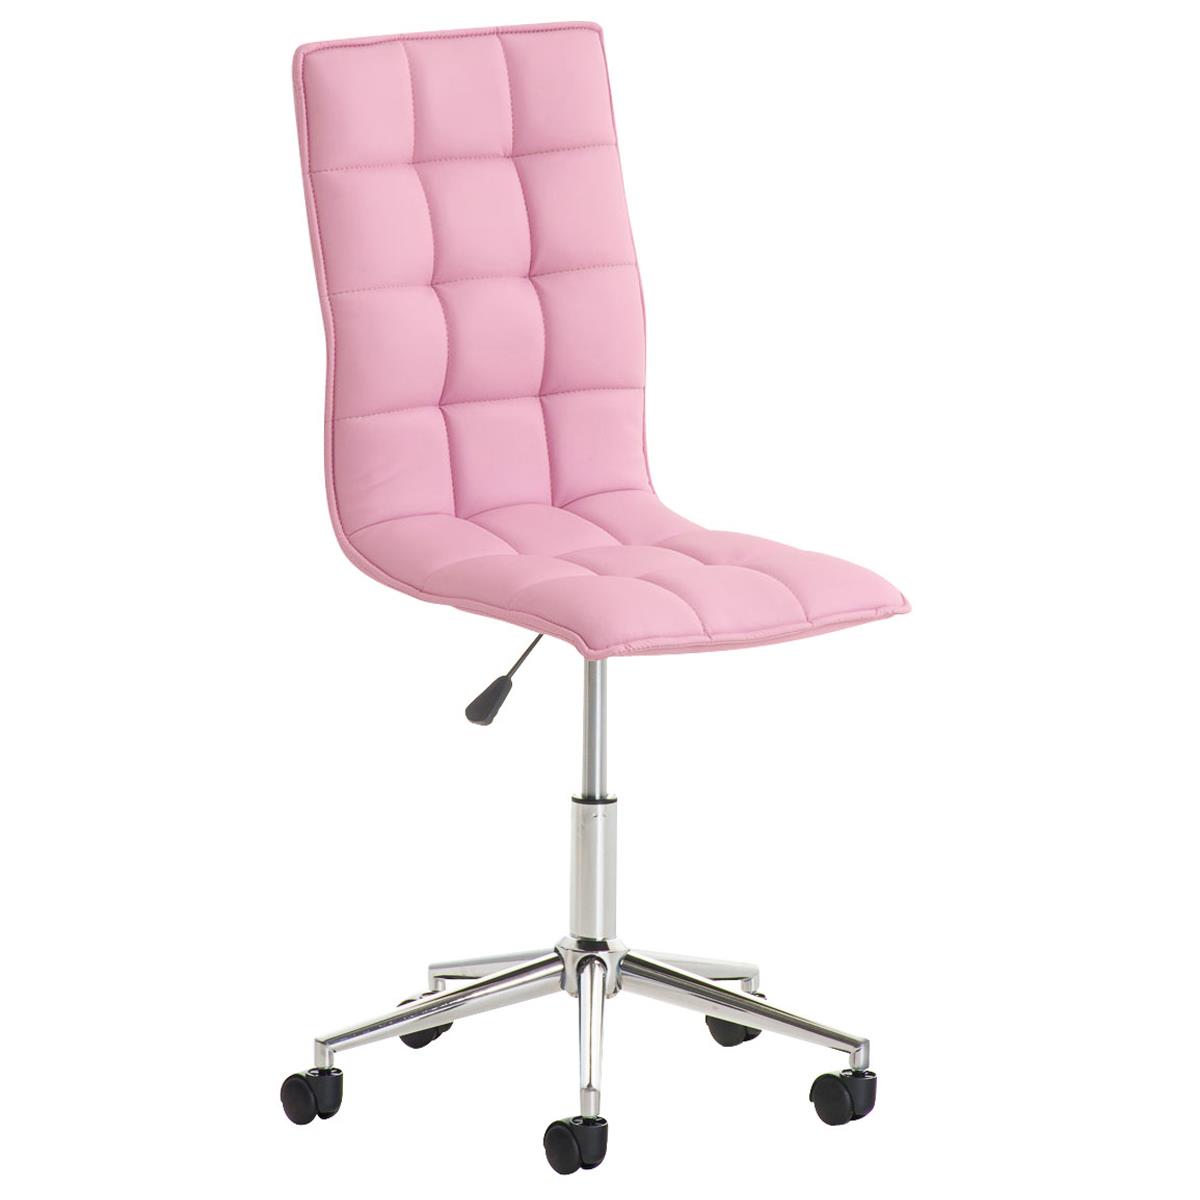 Bürostuhl BULGARI, elegantes Design, höhenverstellbar, Metallfußkreuz, Lederbezug, Farbe Pink